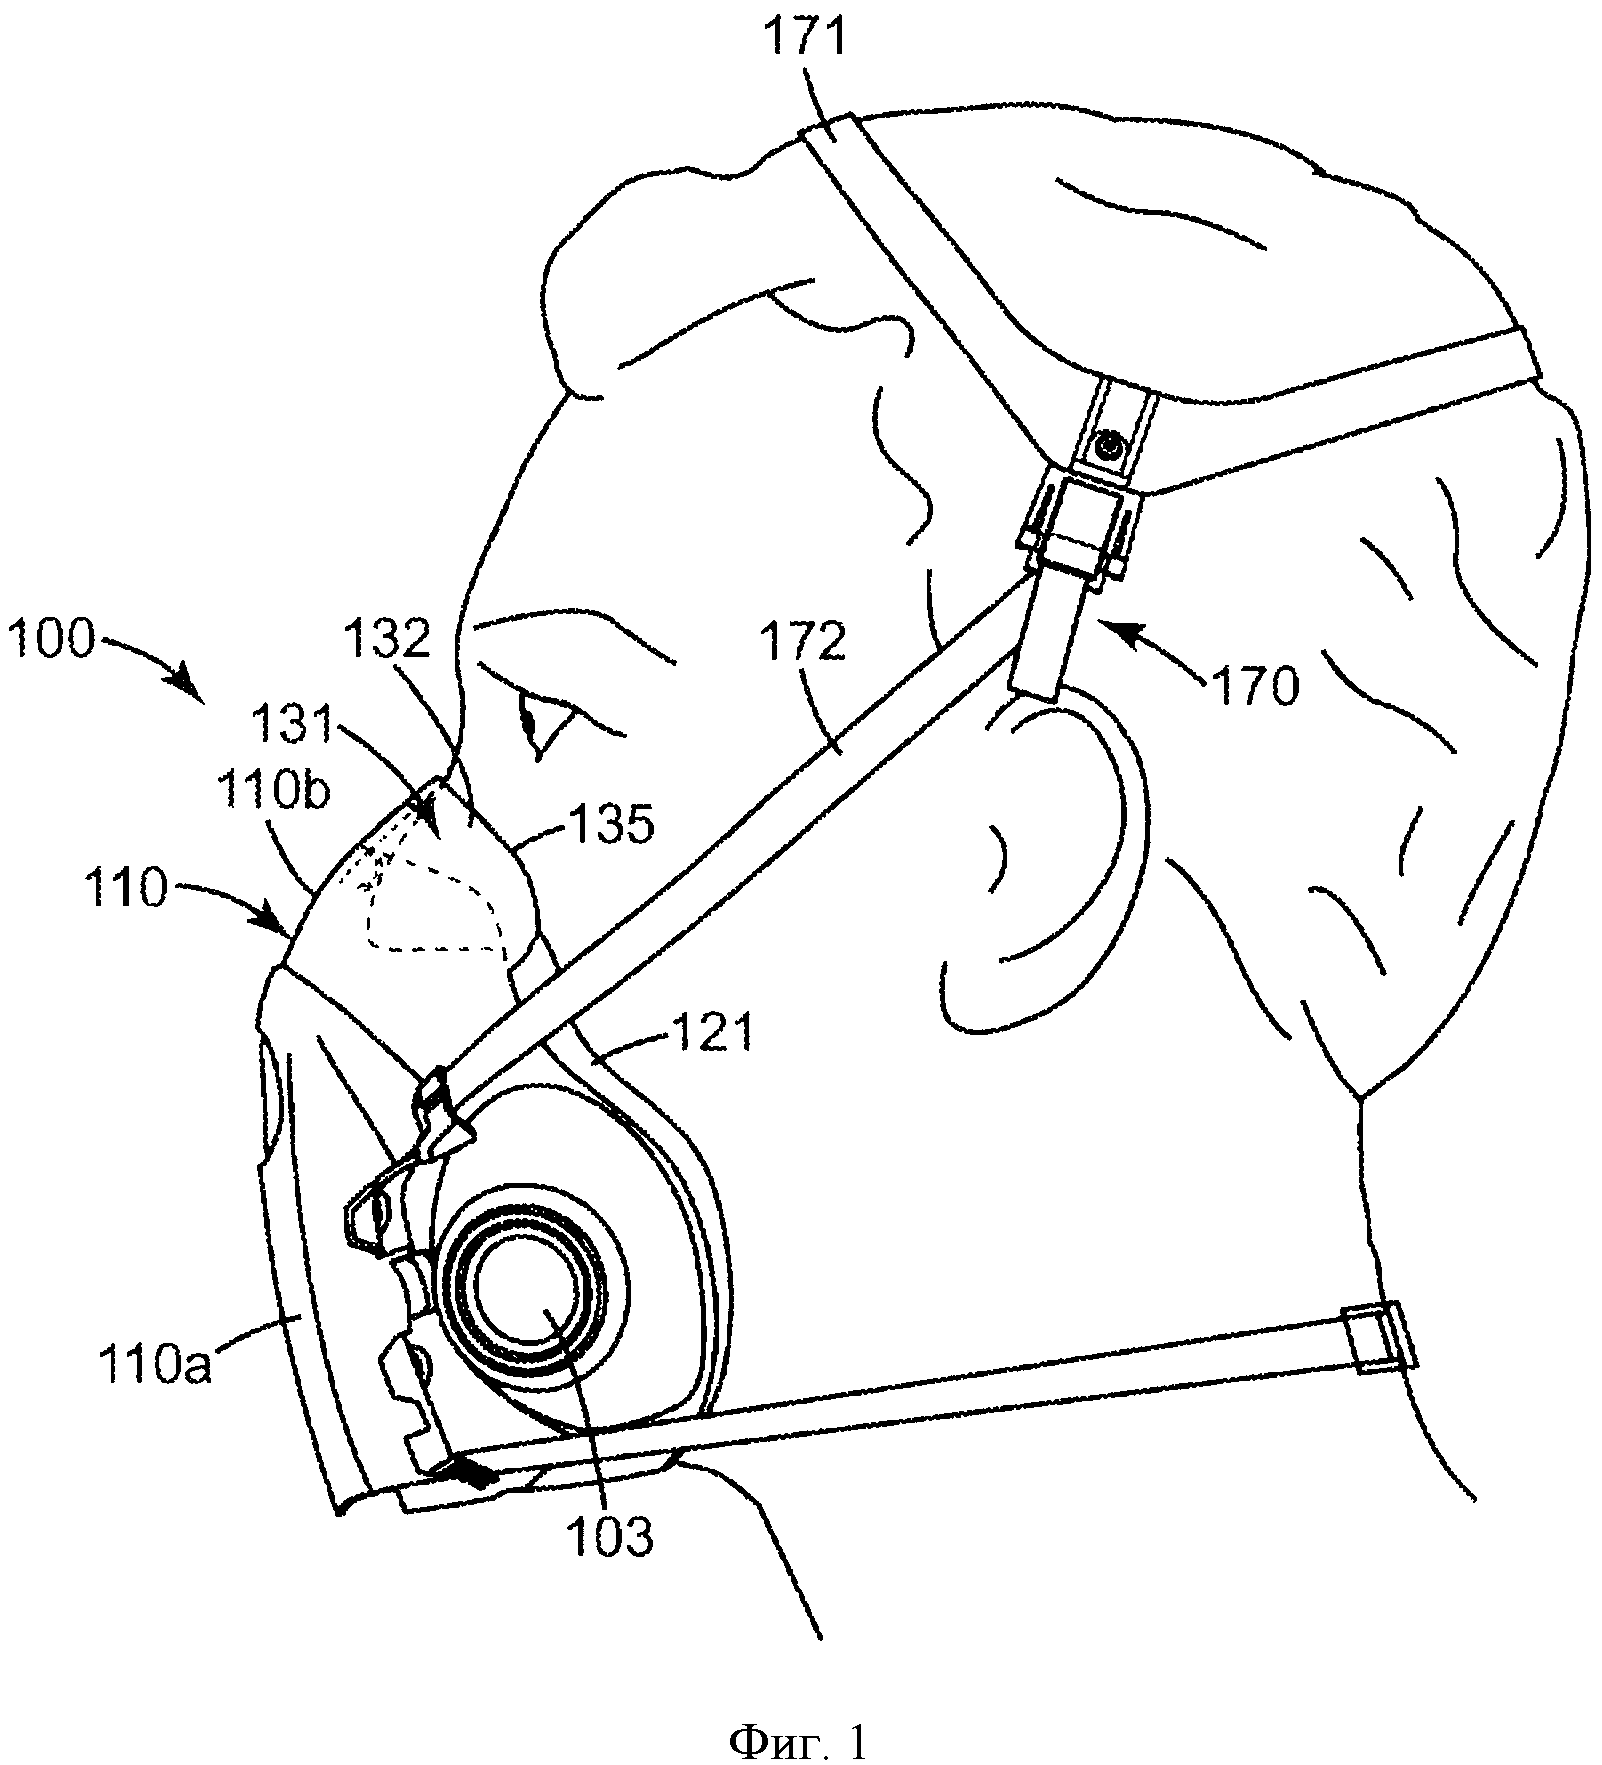 Респираторная маска с носовым опорным элементом-расширителем